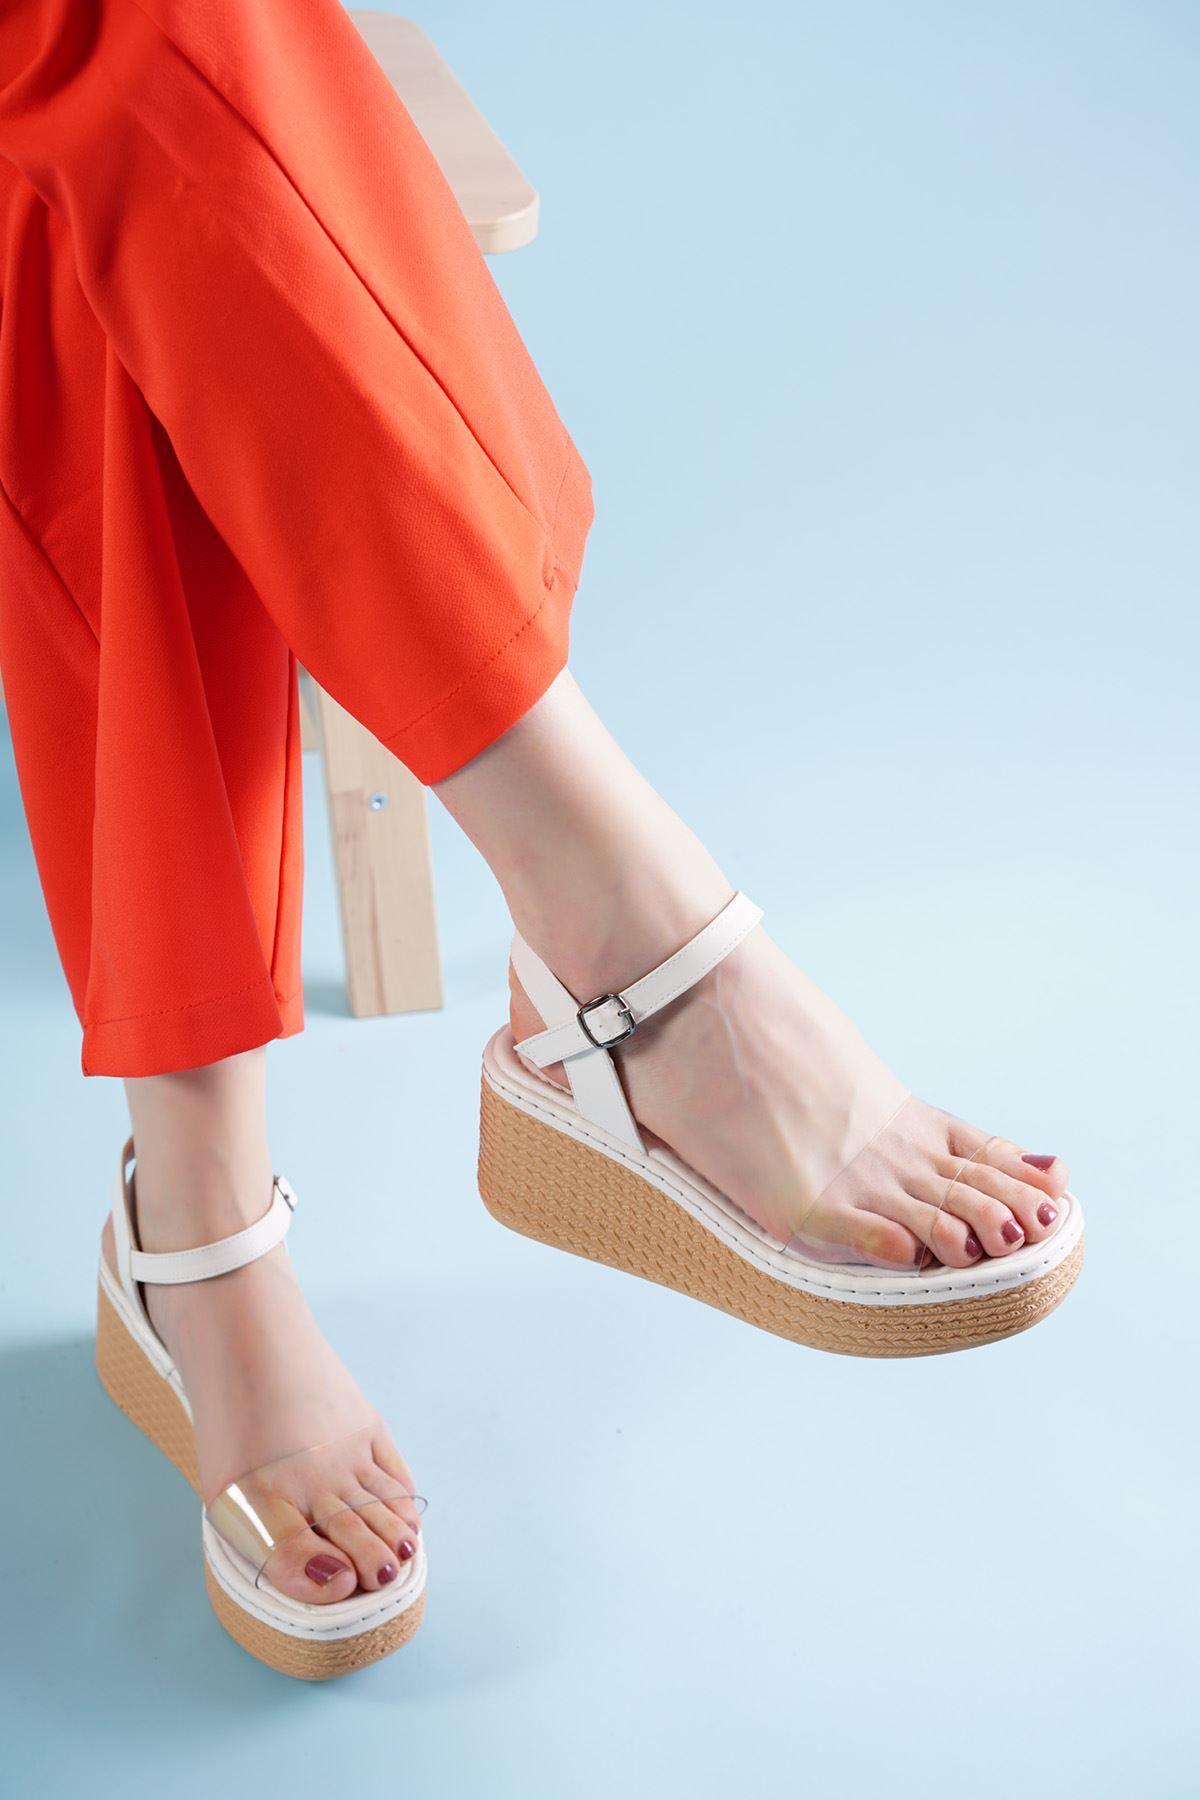 Hive Beyaz Şeffaf Dolgu Topuklu Kadın Ayakkabı